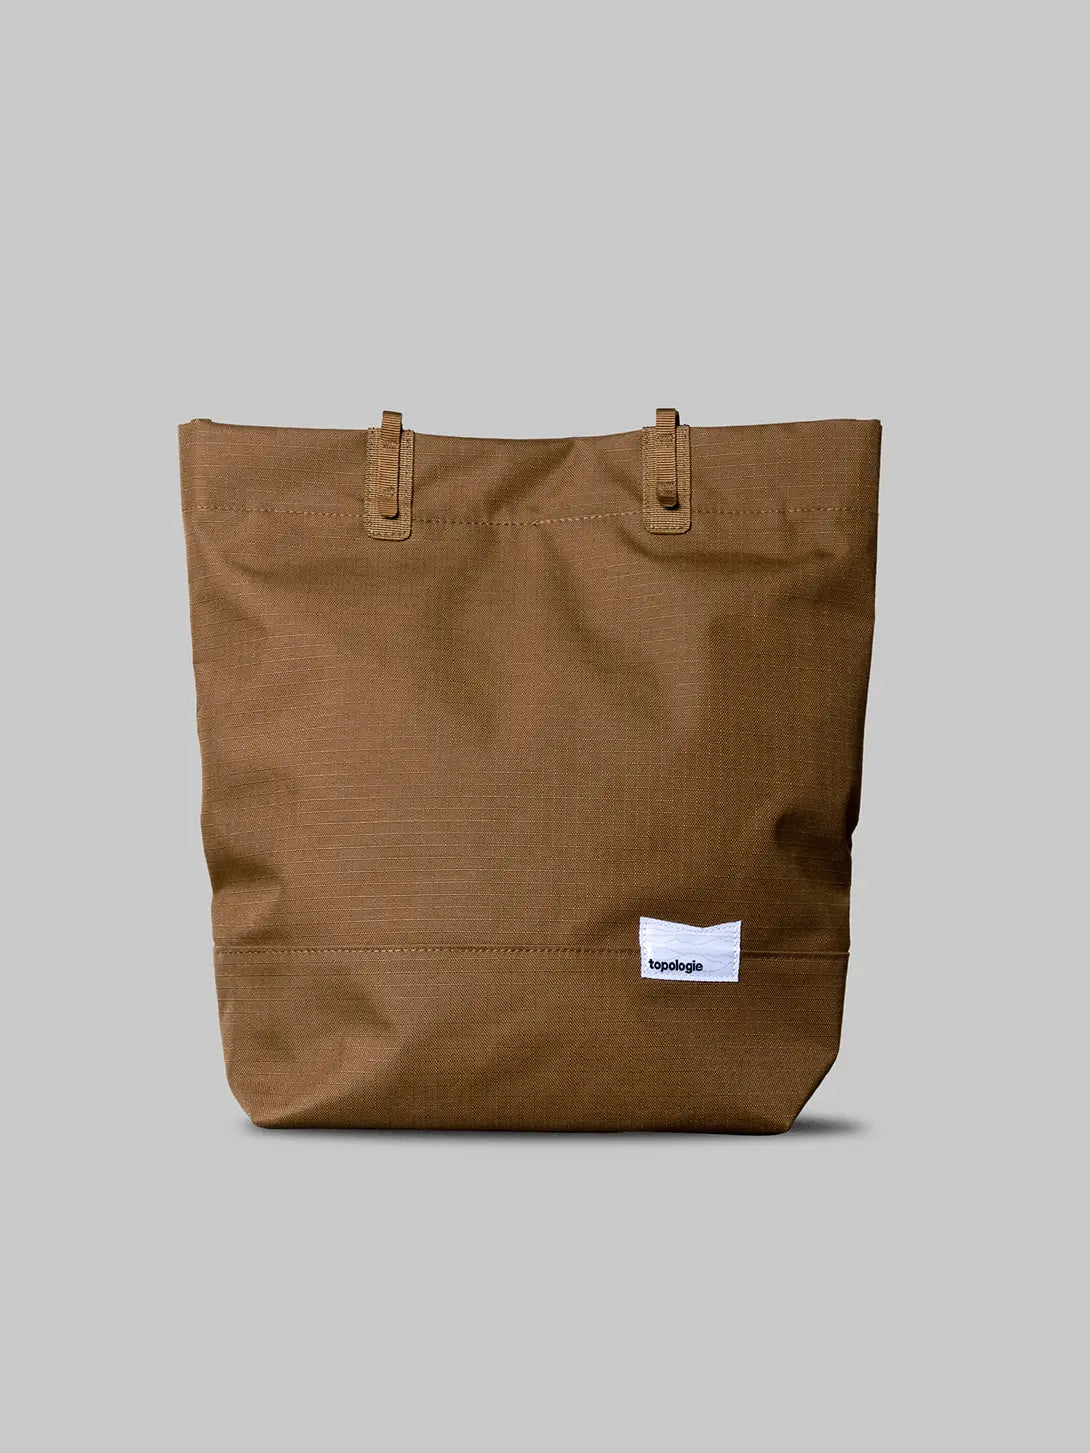 Bronze Tough Topologie Loop Tote Bag